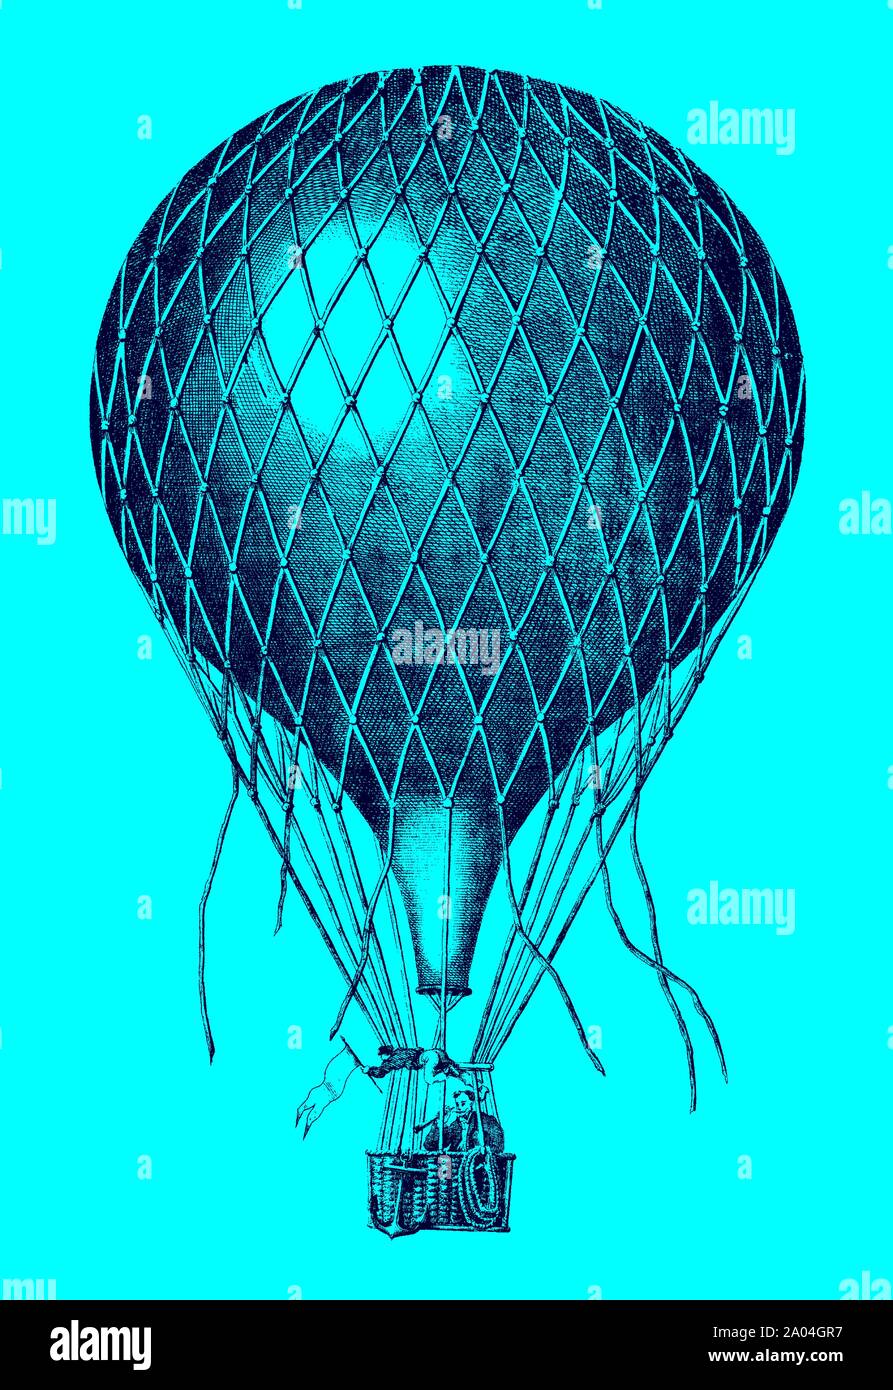 Vols en montgolfière historique avec deux hommes à bord devant un fond bleu. lllustration après une lithographie du xixe siècle. Dans la couche modifiable Illustration de Vecteur